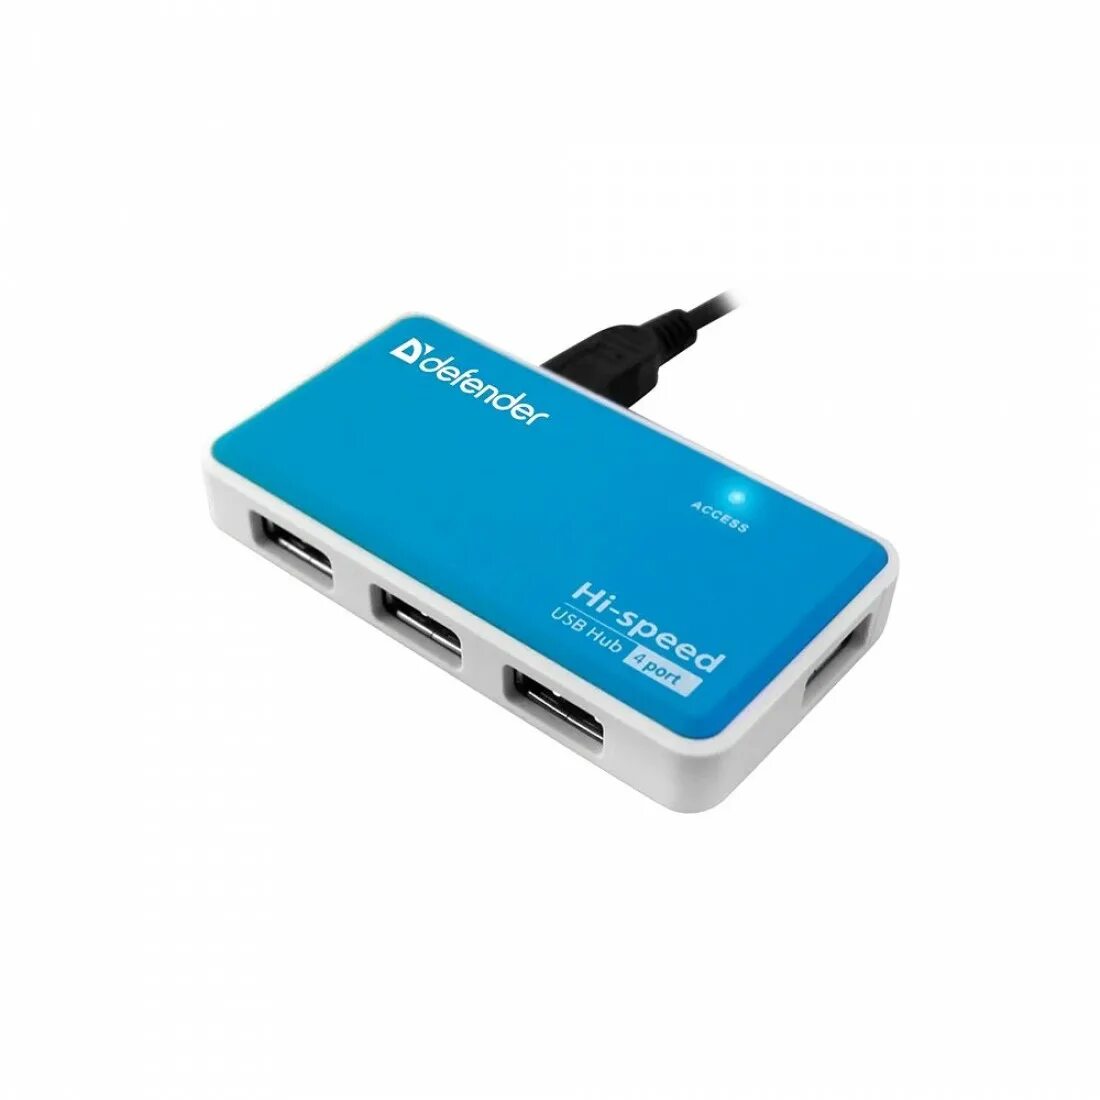 Разветвитель USB Defender Quadro Power (83503). Универсальный хаб USB разветвитель Defender Quadro Power, 4 порта. Hub Defender Quadro Power USB2.0, 4 порта (1/100). Разветвитель USB Defender Quadro PROMT USB 2.0, 4 порта (83200). Defender usb quadro